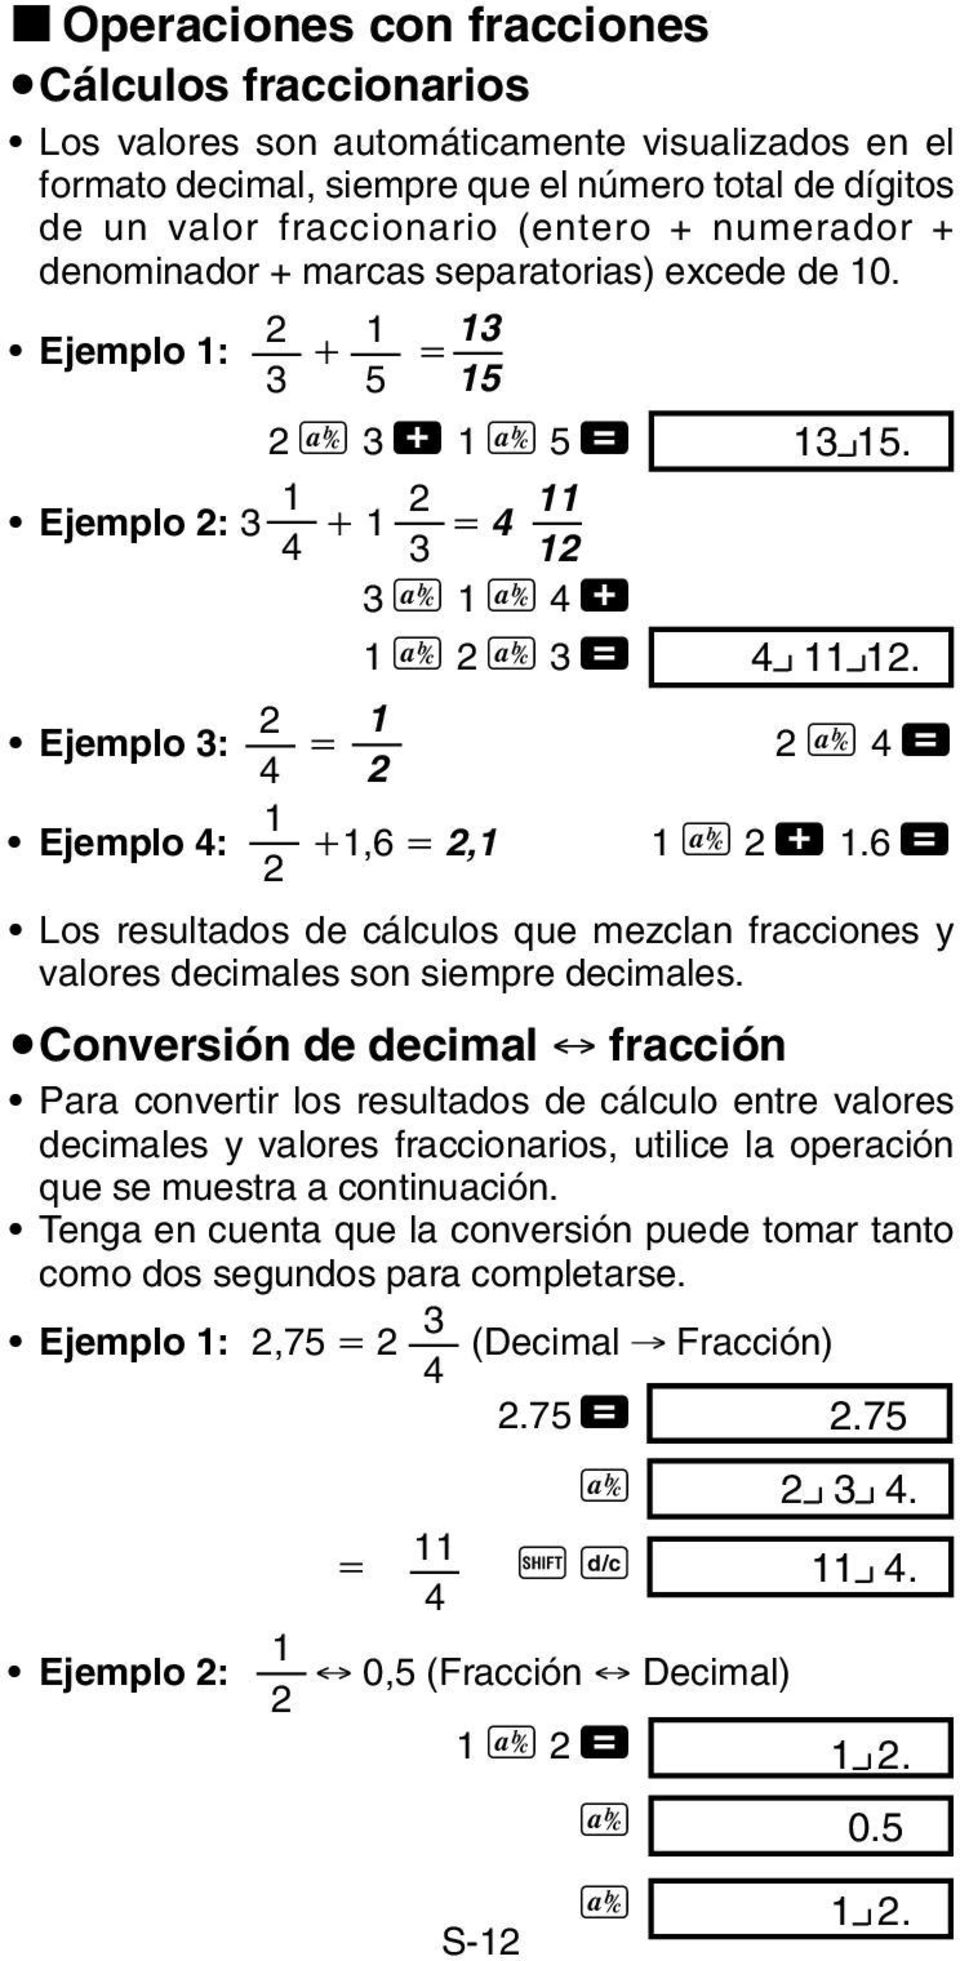 00 2 1 Ejemplo 3: 4 2 2 C 4 = Ejemplo 4: 1 2 1,6 2,1 1 C 2 + 1.6 = Los resultados de cálculos que mezclan fracciones y valores decimales son siempre decimales.